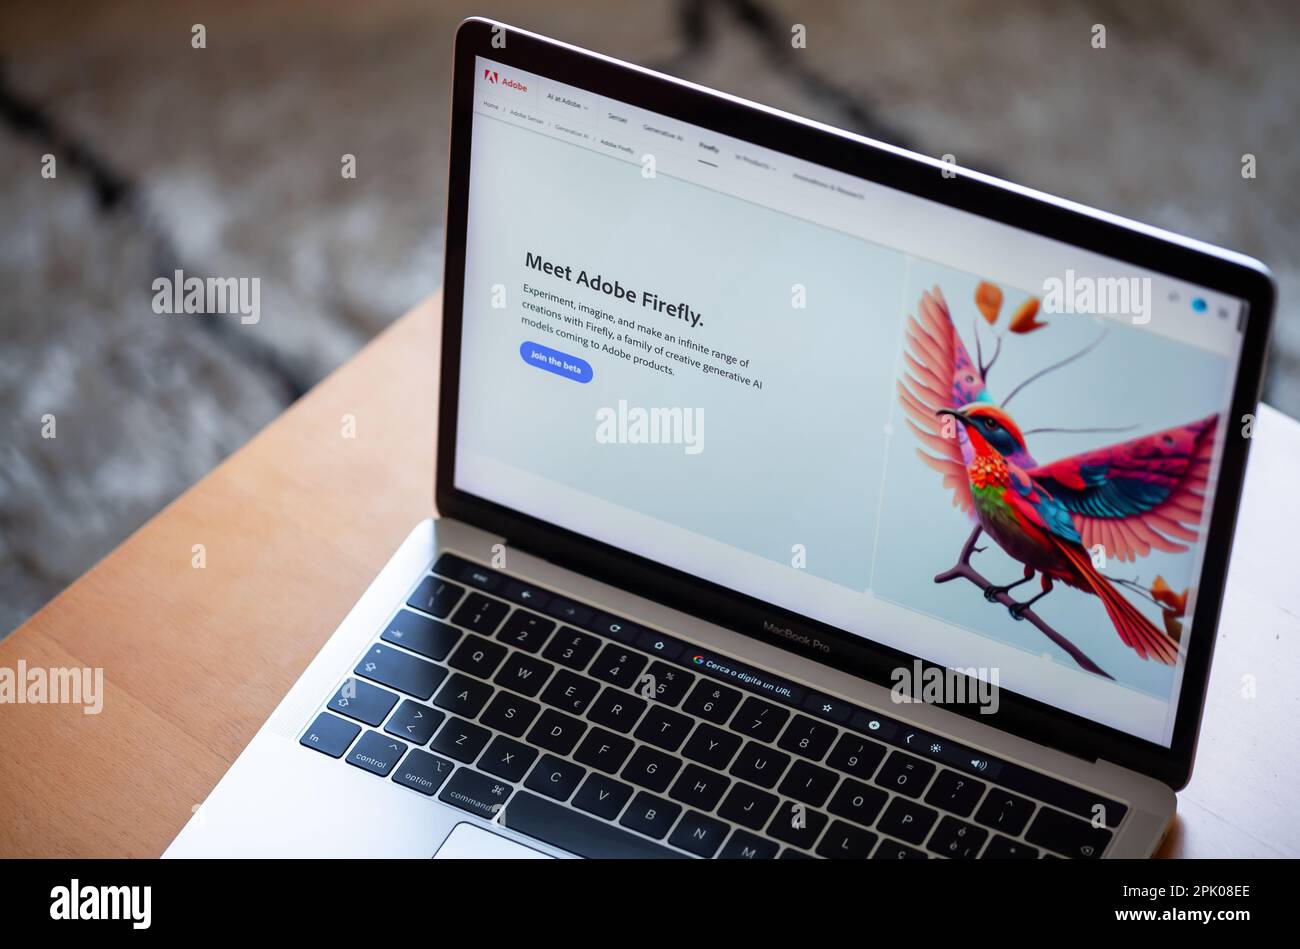 ITALIE - 4 avril 2023 : site Web d'Adobe Firefly affiché sur l'écran de l'ordinateur portable mac. Adobe a annoncé la version bêta de son outil ai Art Generator. Banque D'Images